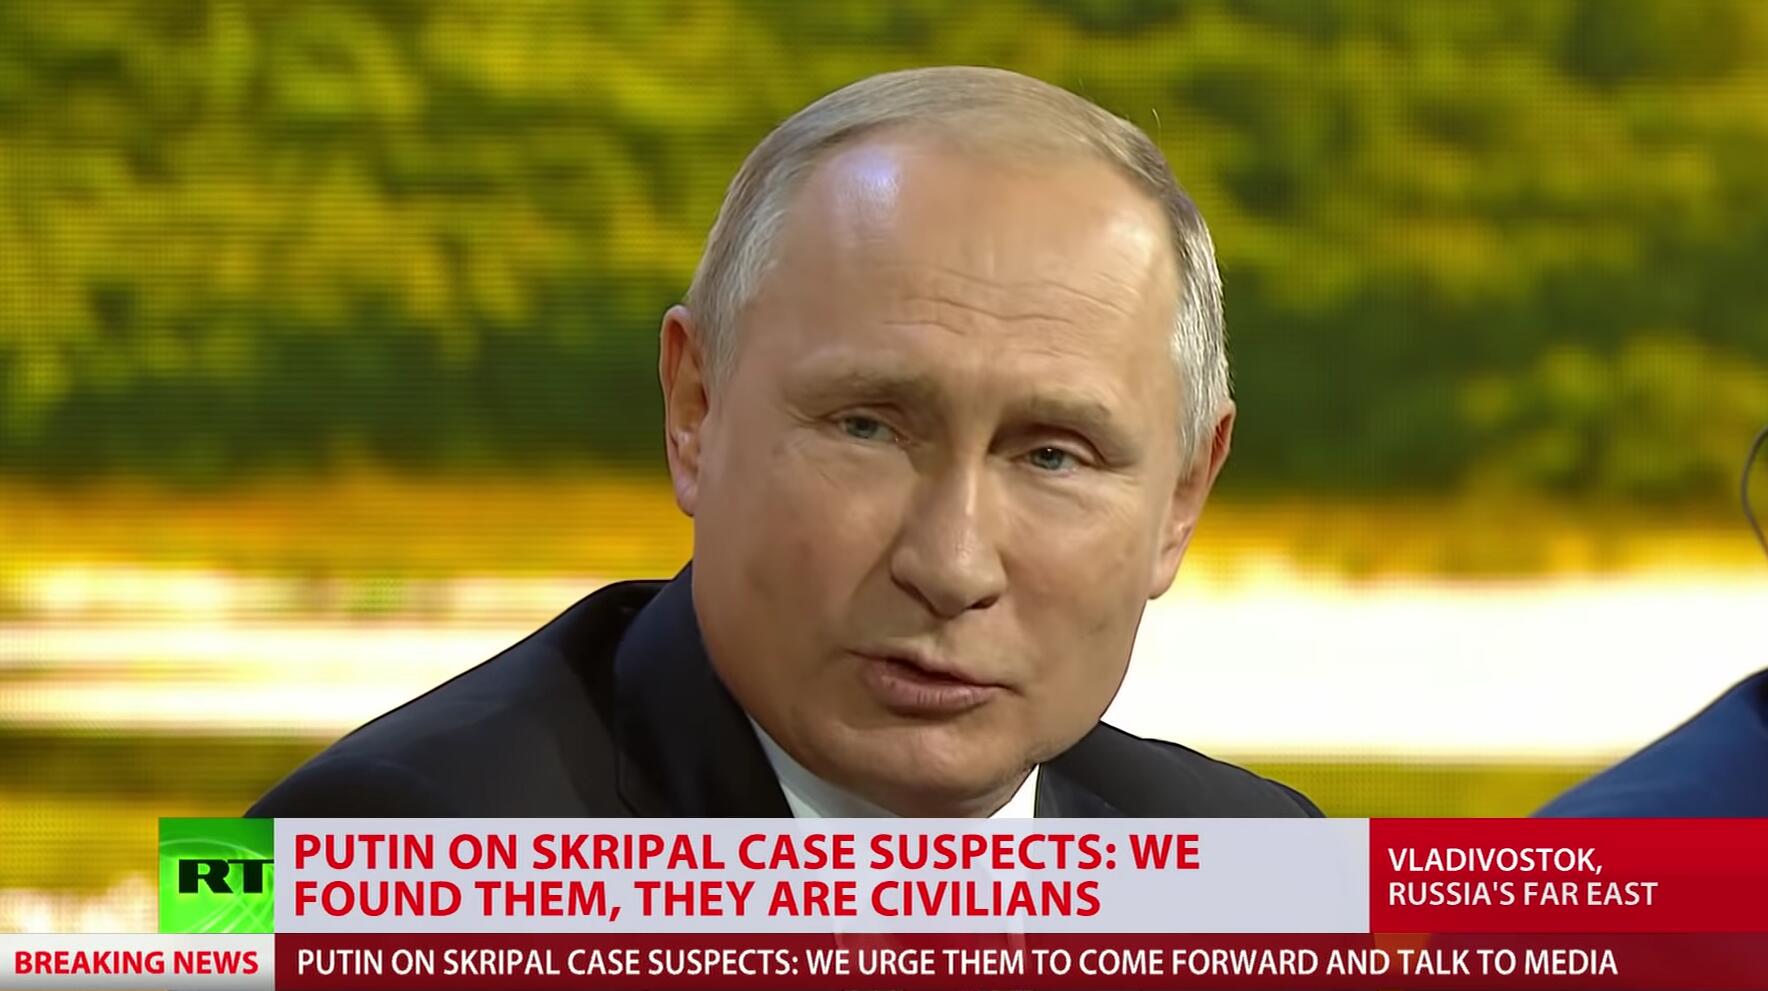 视频截图：普京表示英方指控的“嫌疑人”是无辜的平民。